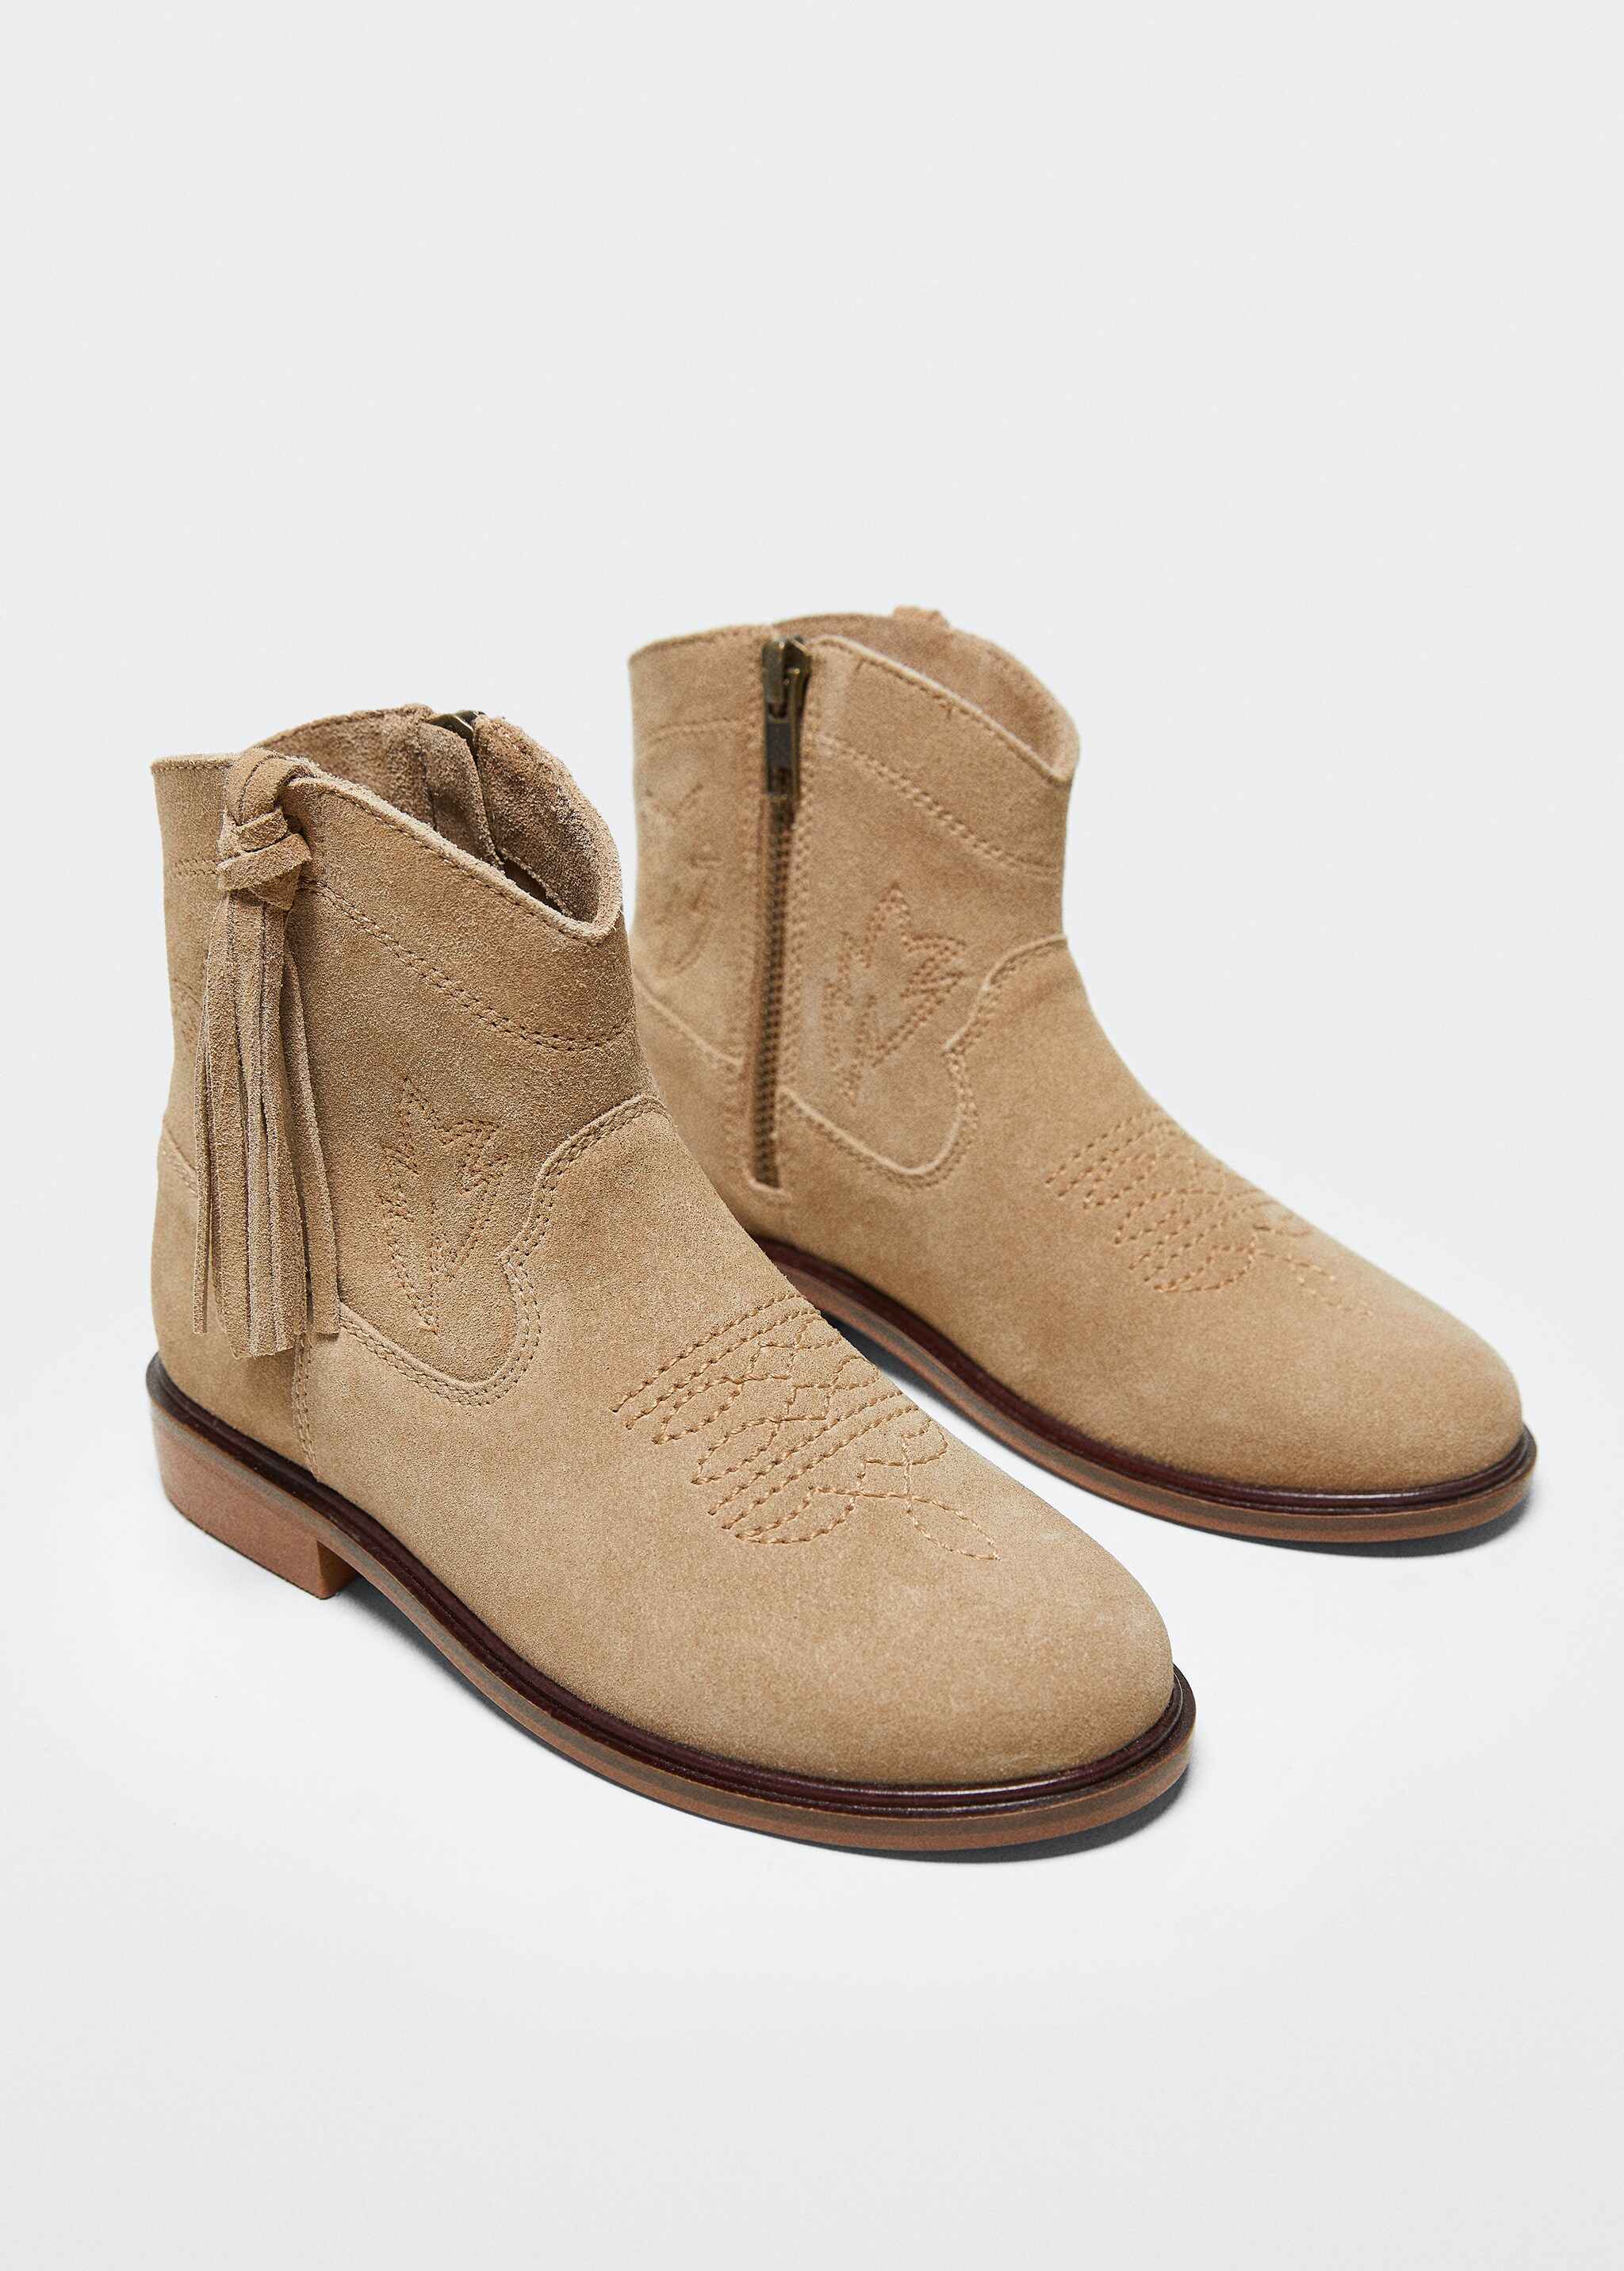 Fringed leather boots - Medium plane